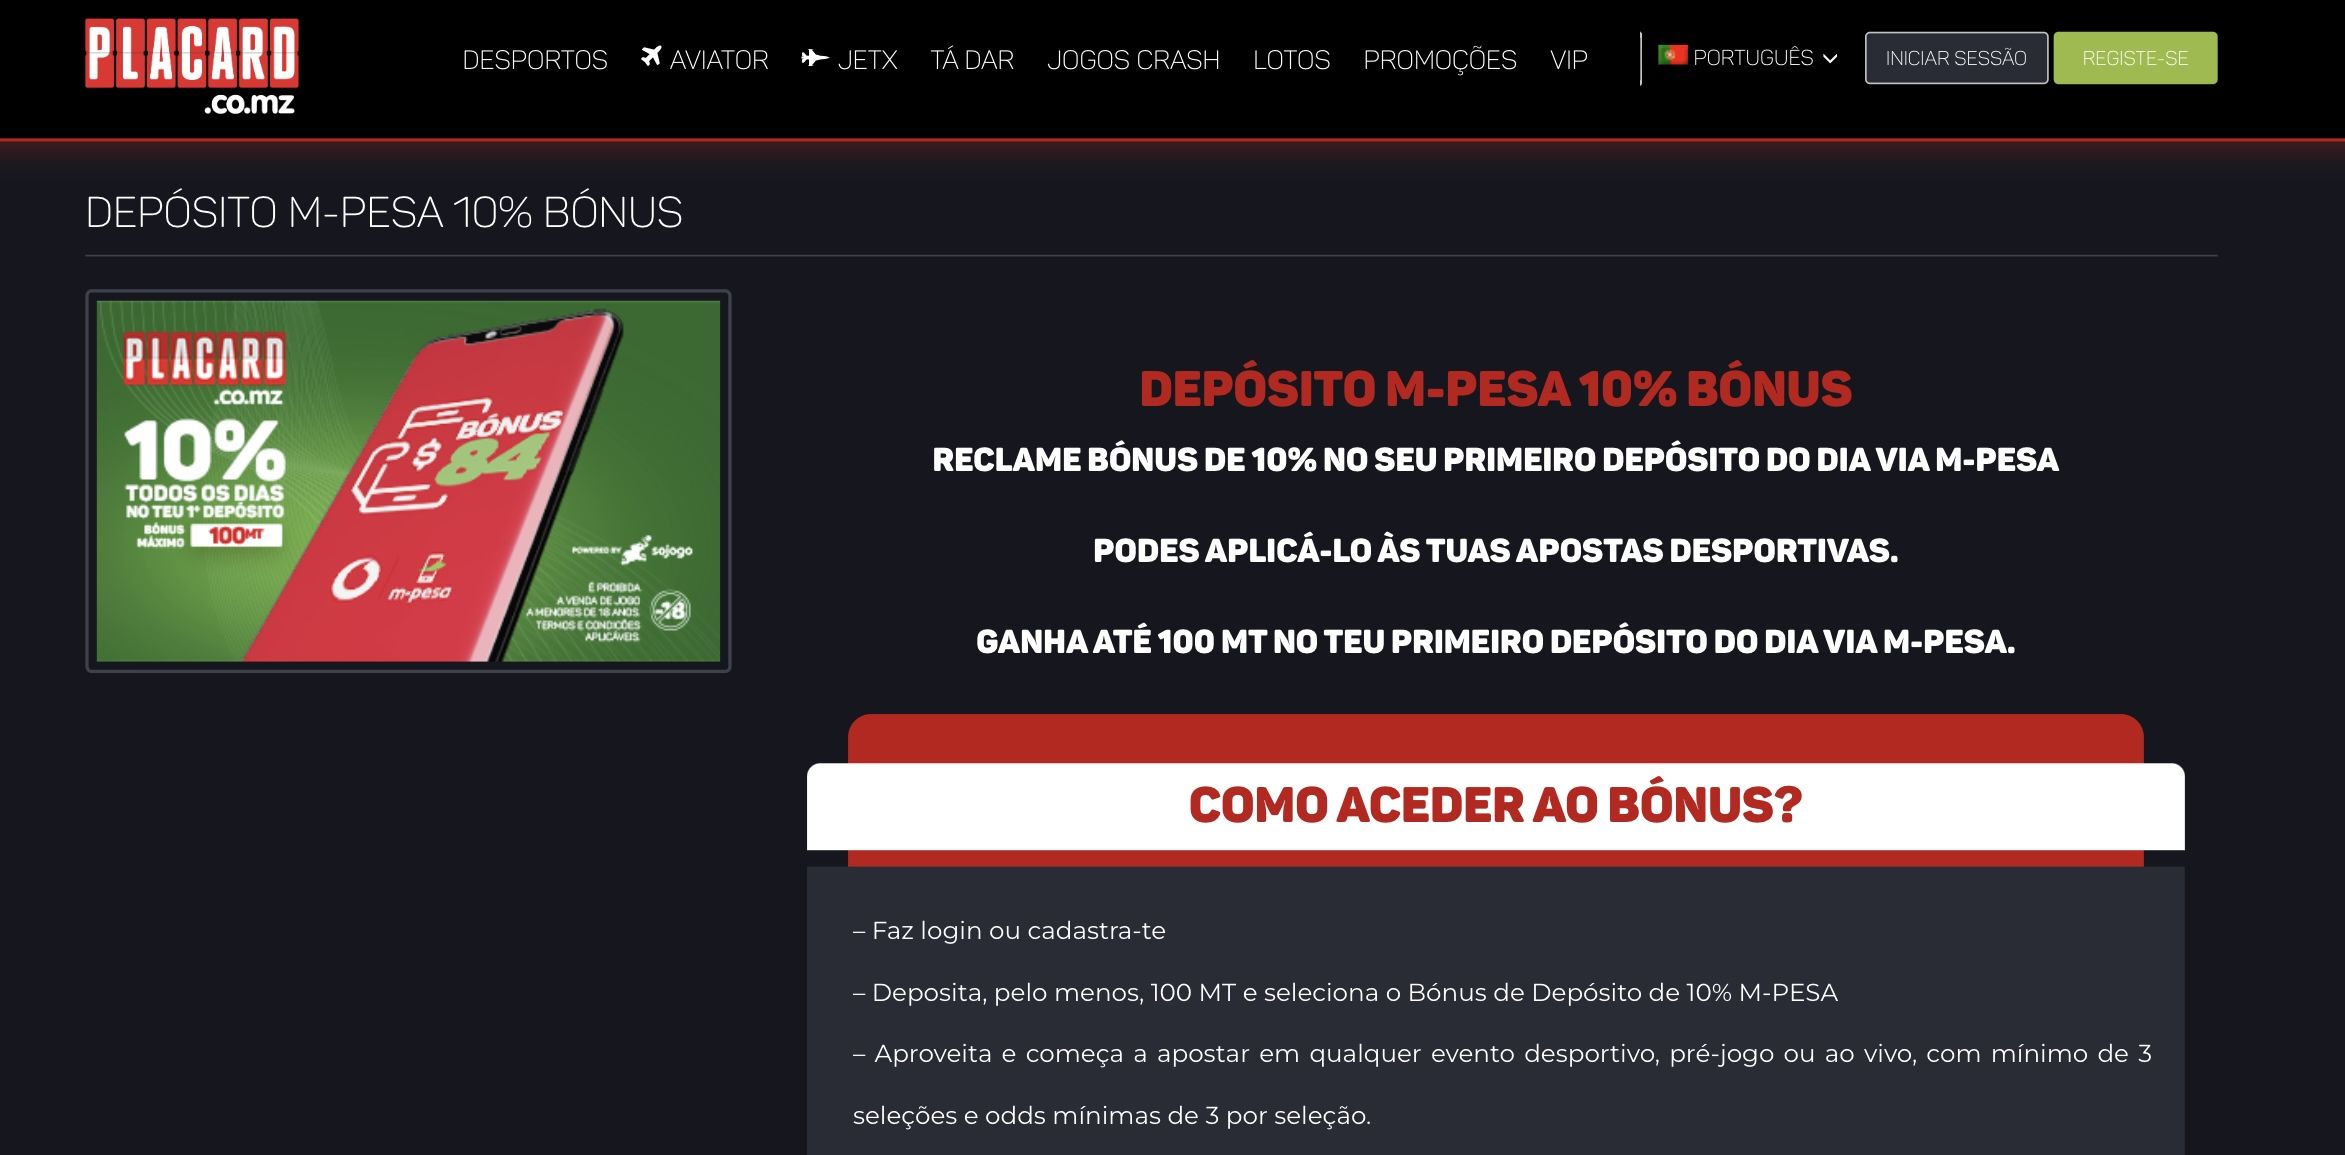 Placard site de apostas em Moçambique